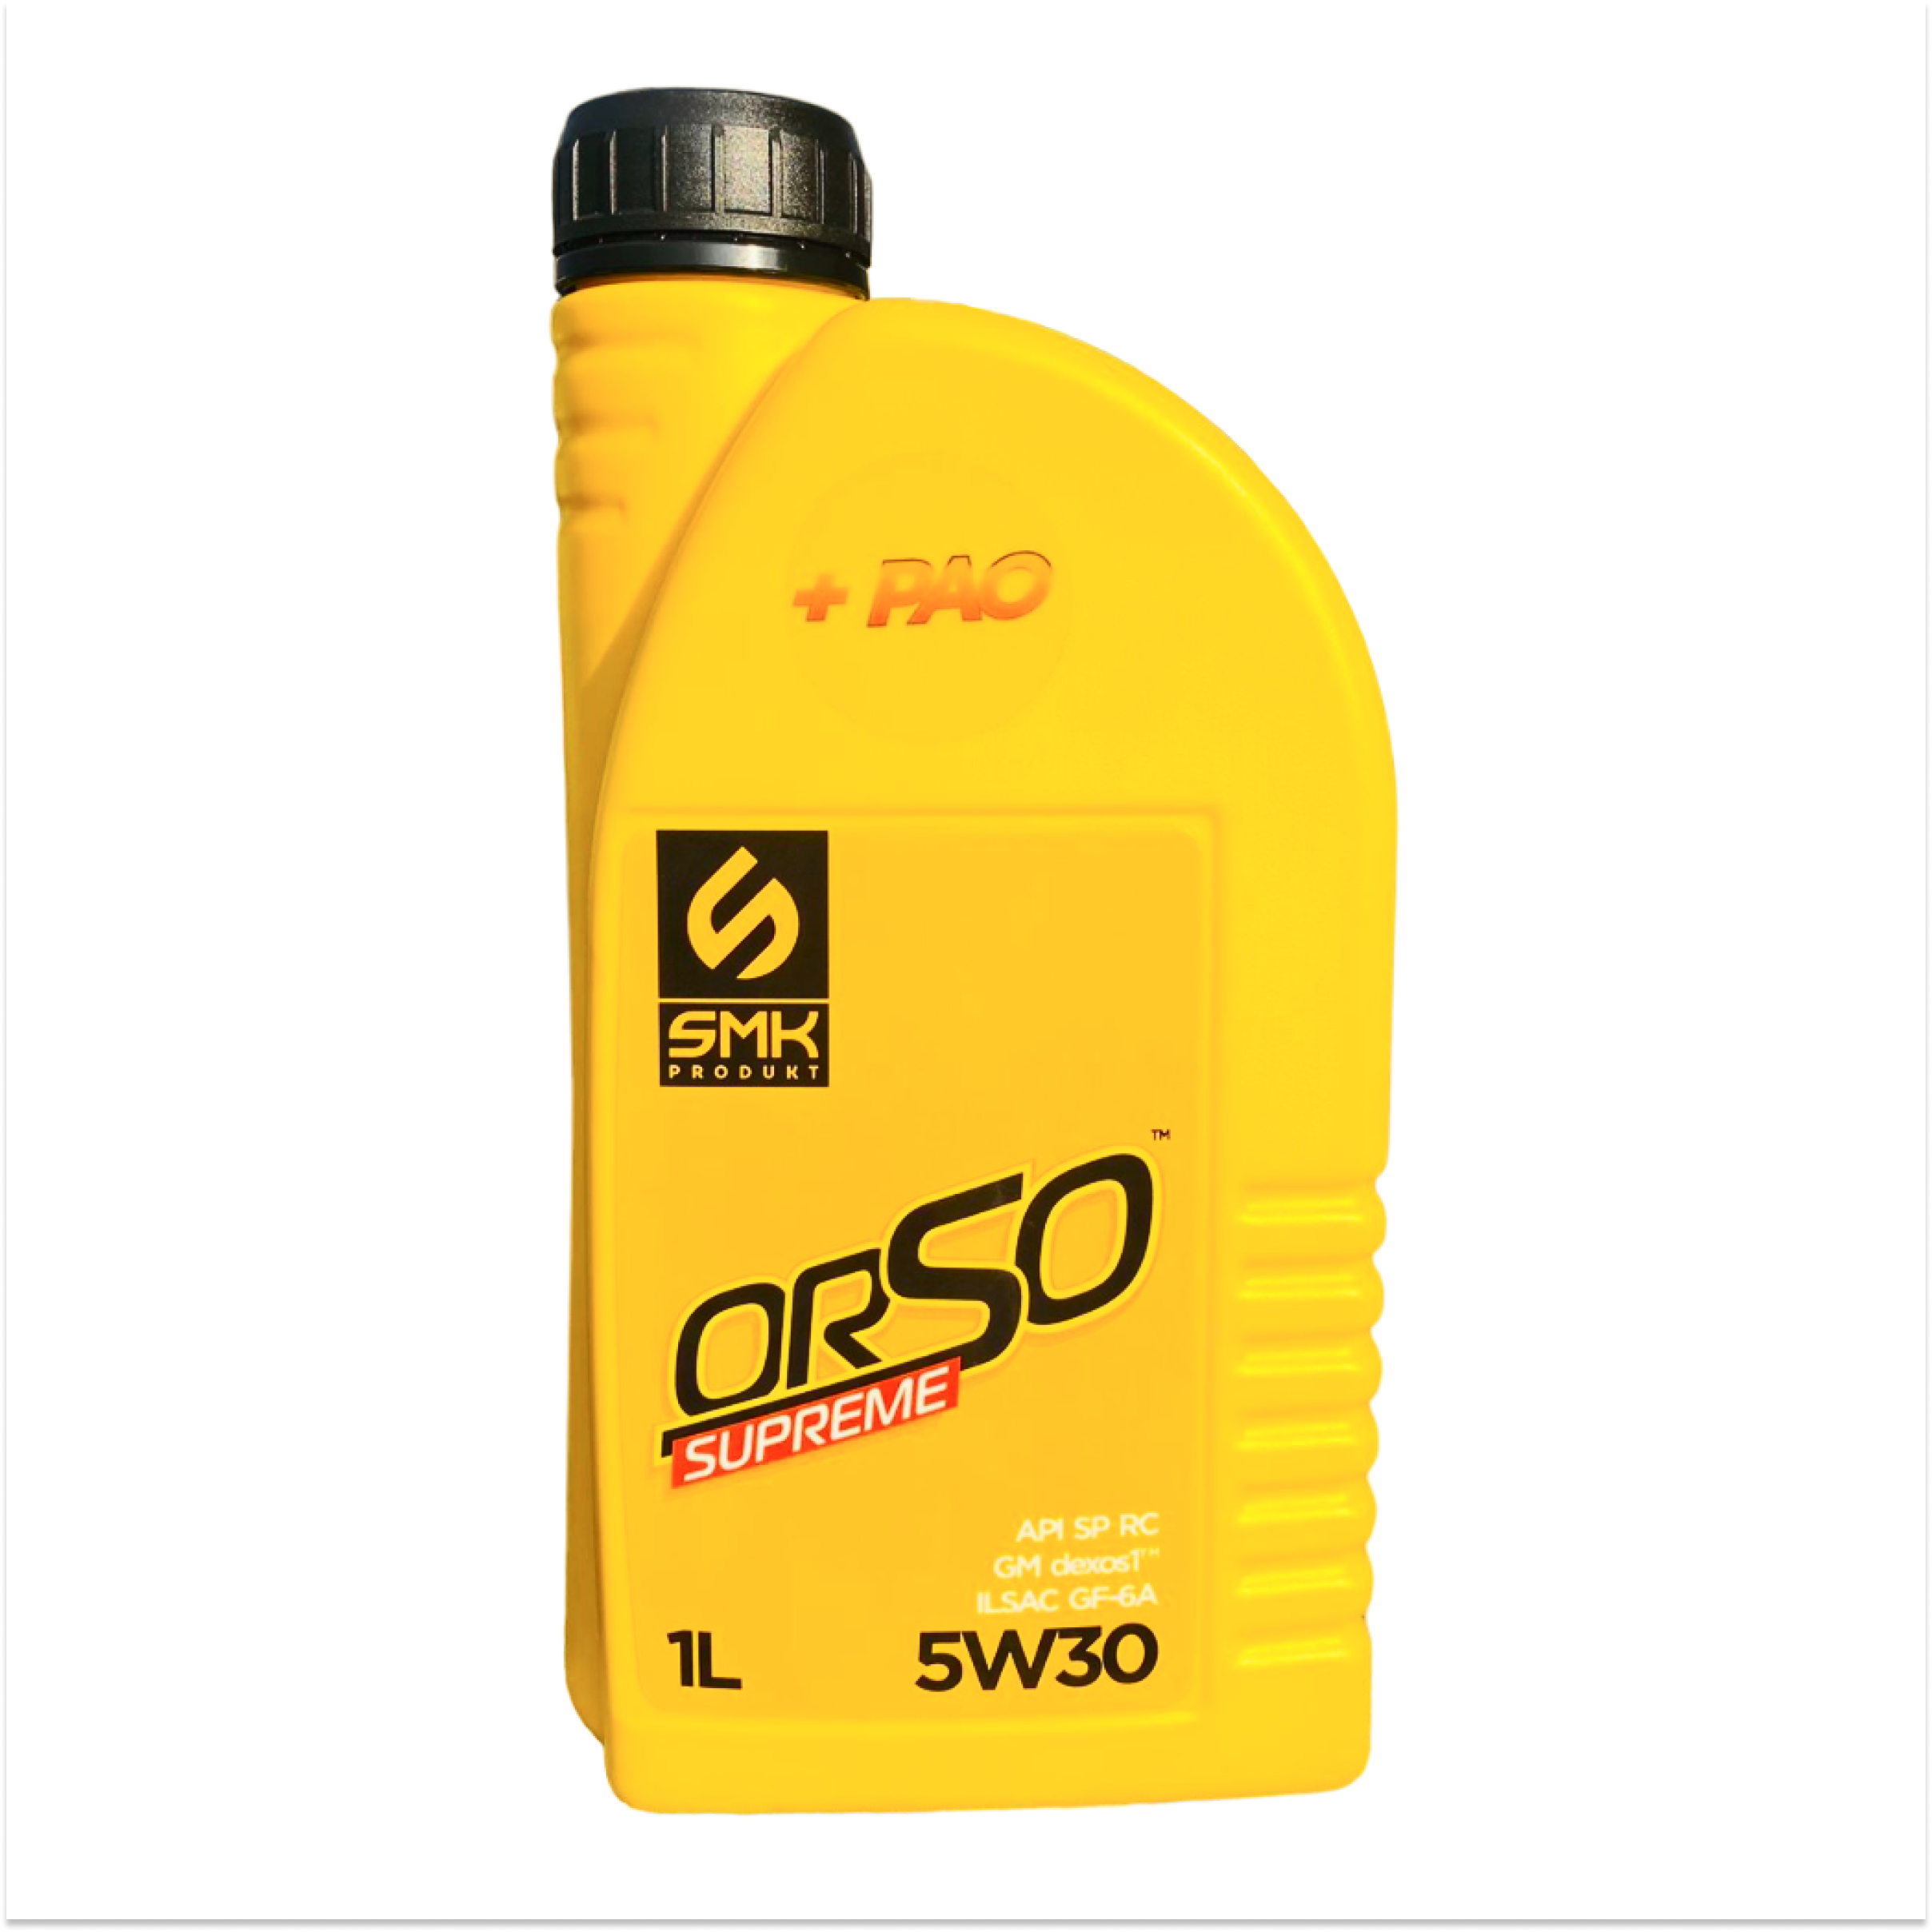 Моторное масло SMK PRODUKT ORSO SUPREME 5W30 универсальное, полностью синтетическое, 1л.